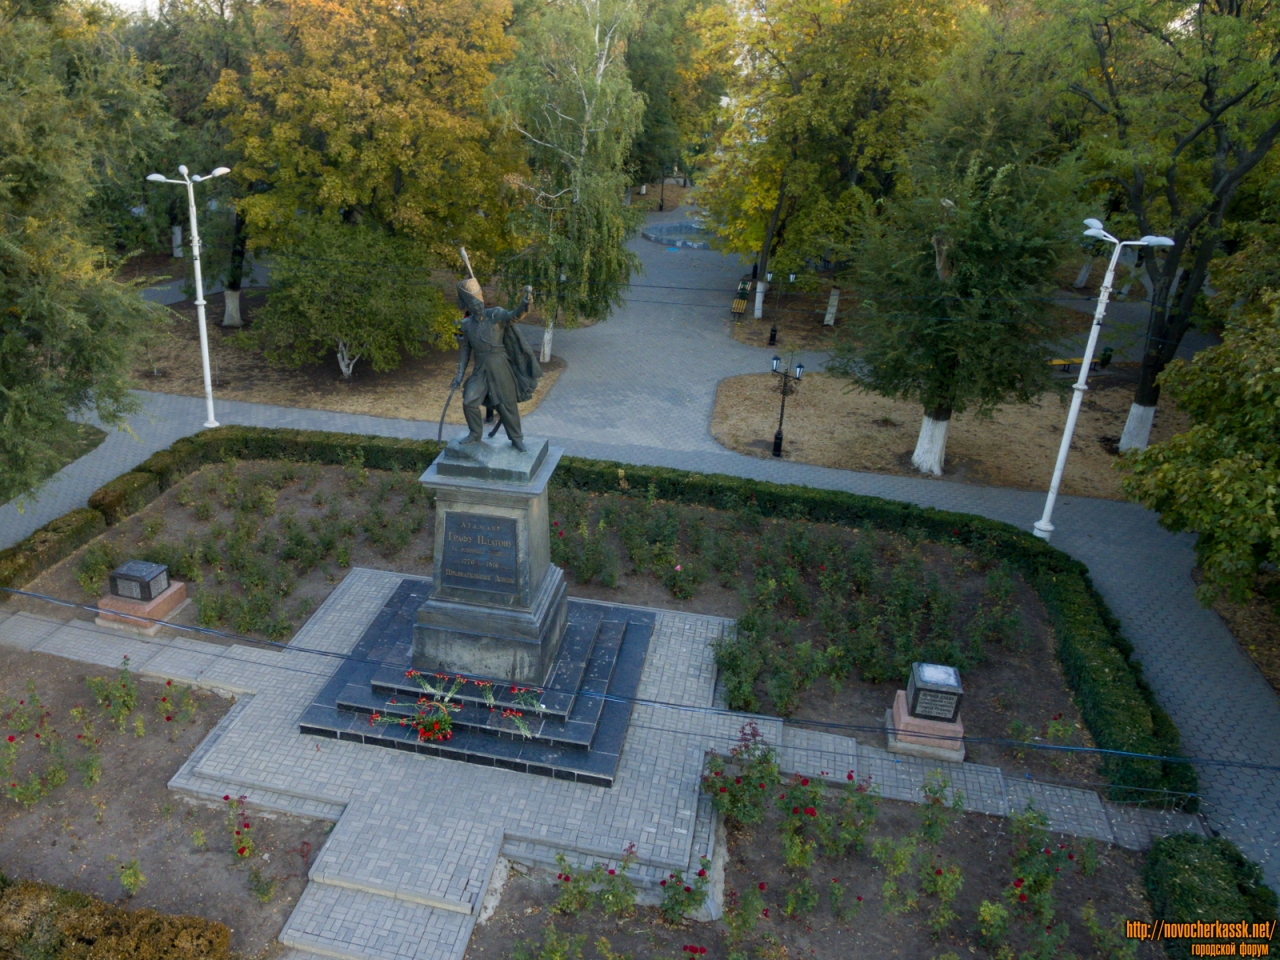 Новочеркасск: Памятник Платову